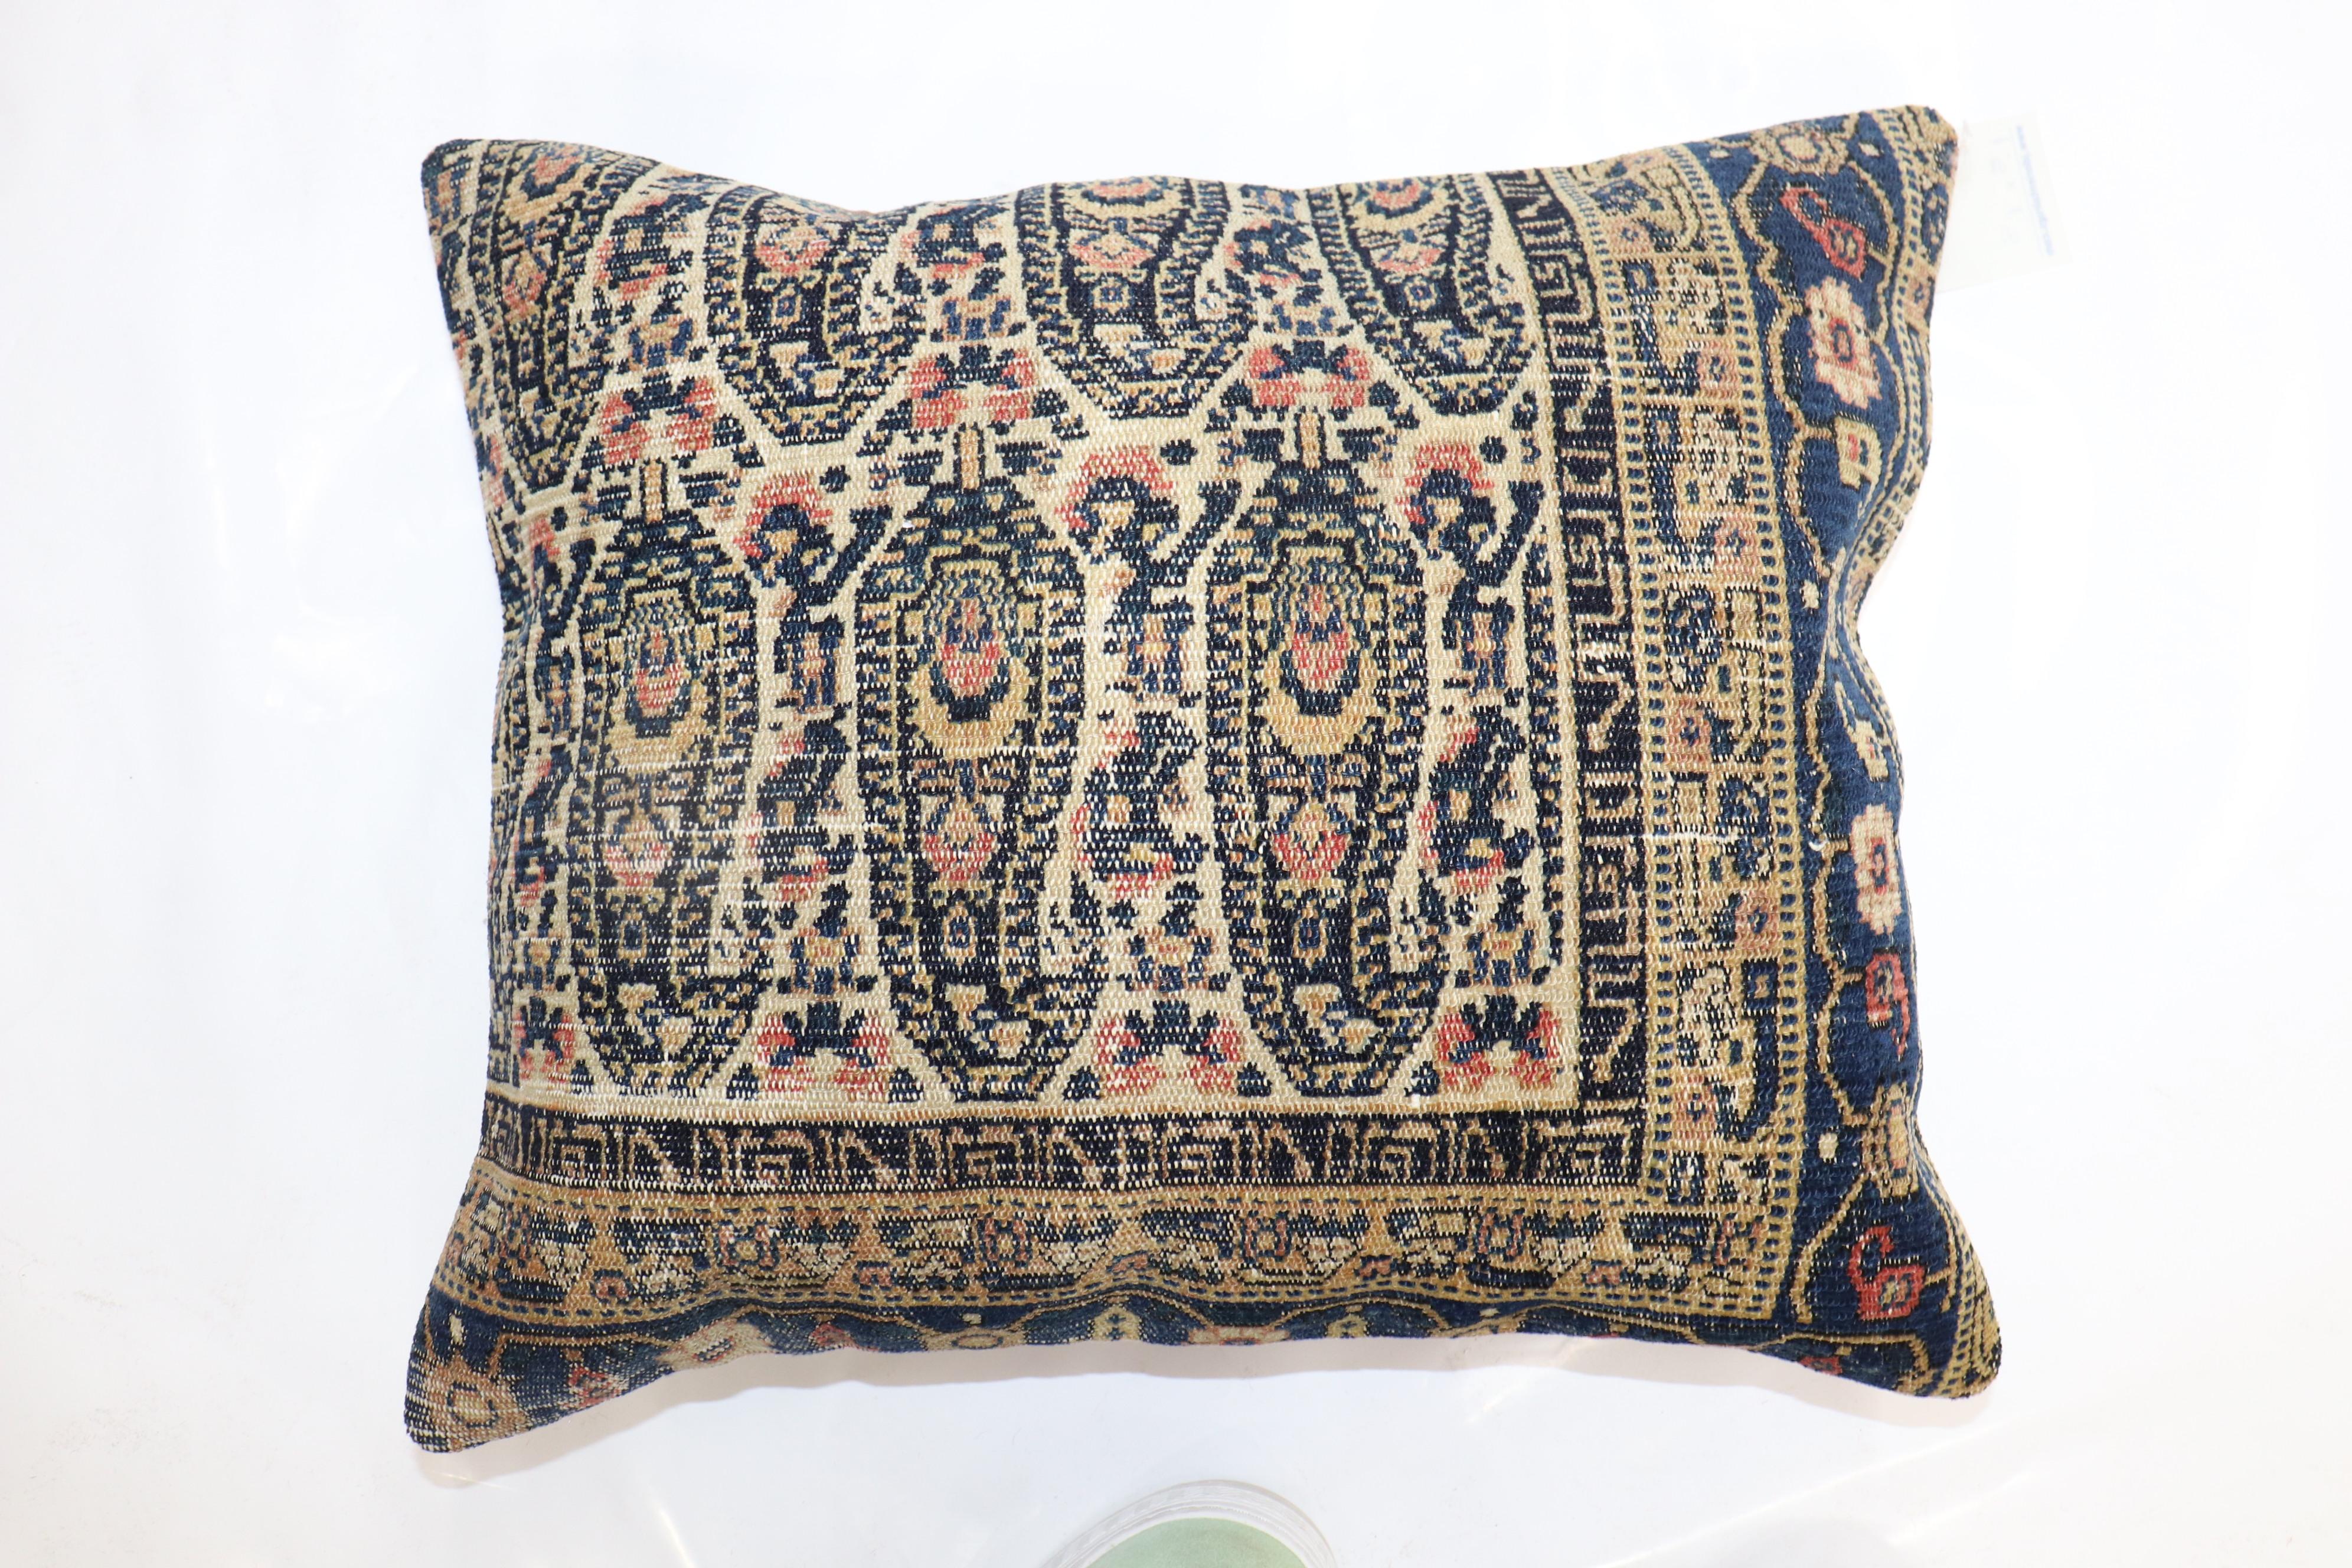 Kissen aus einem fein gewebten persischen Senneh-Teppich.

Maße: 17'' x 20''.